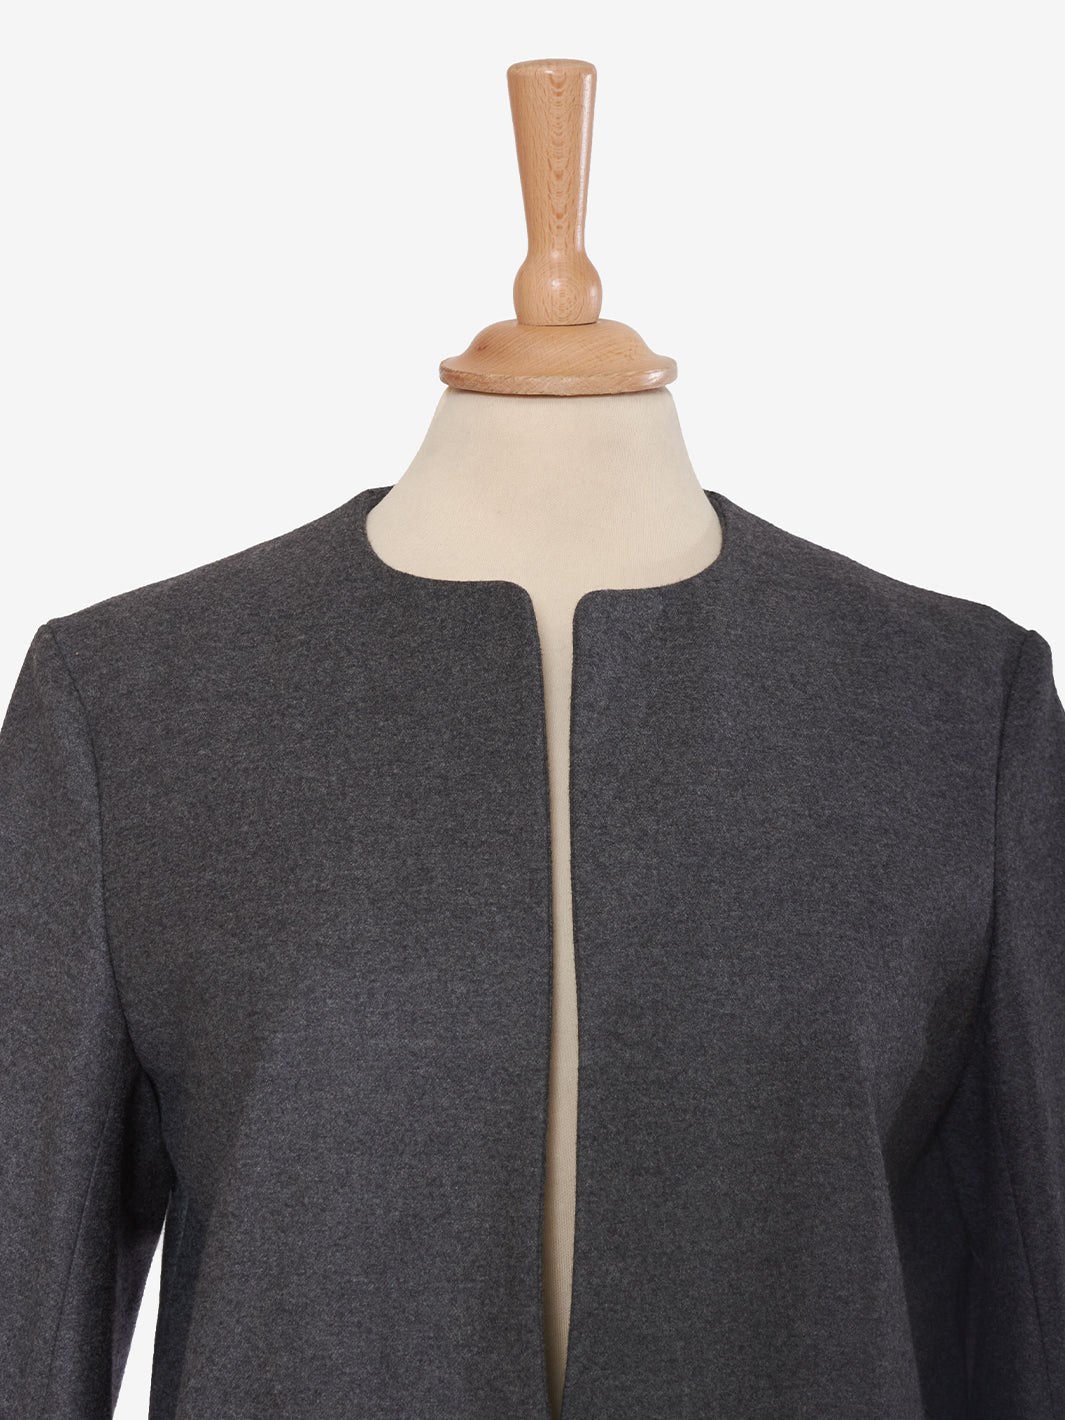 Yves Saint Laurent Grey overcoat